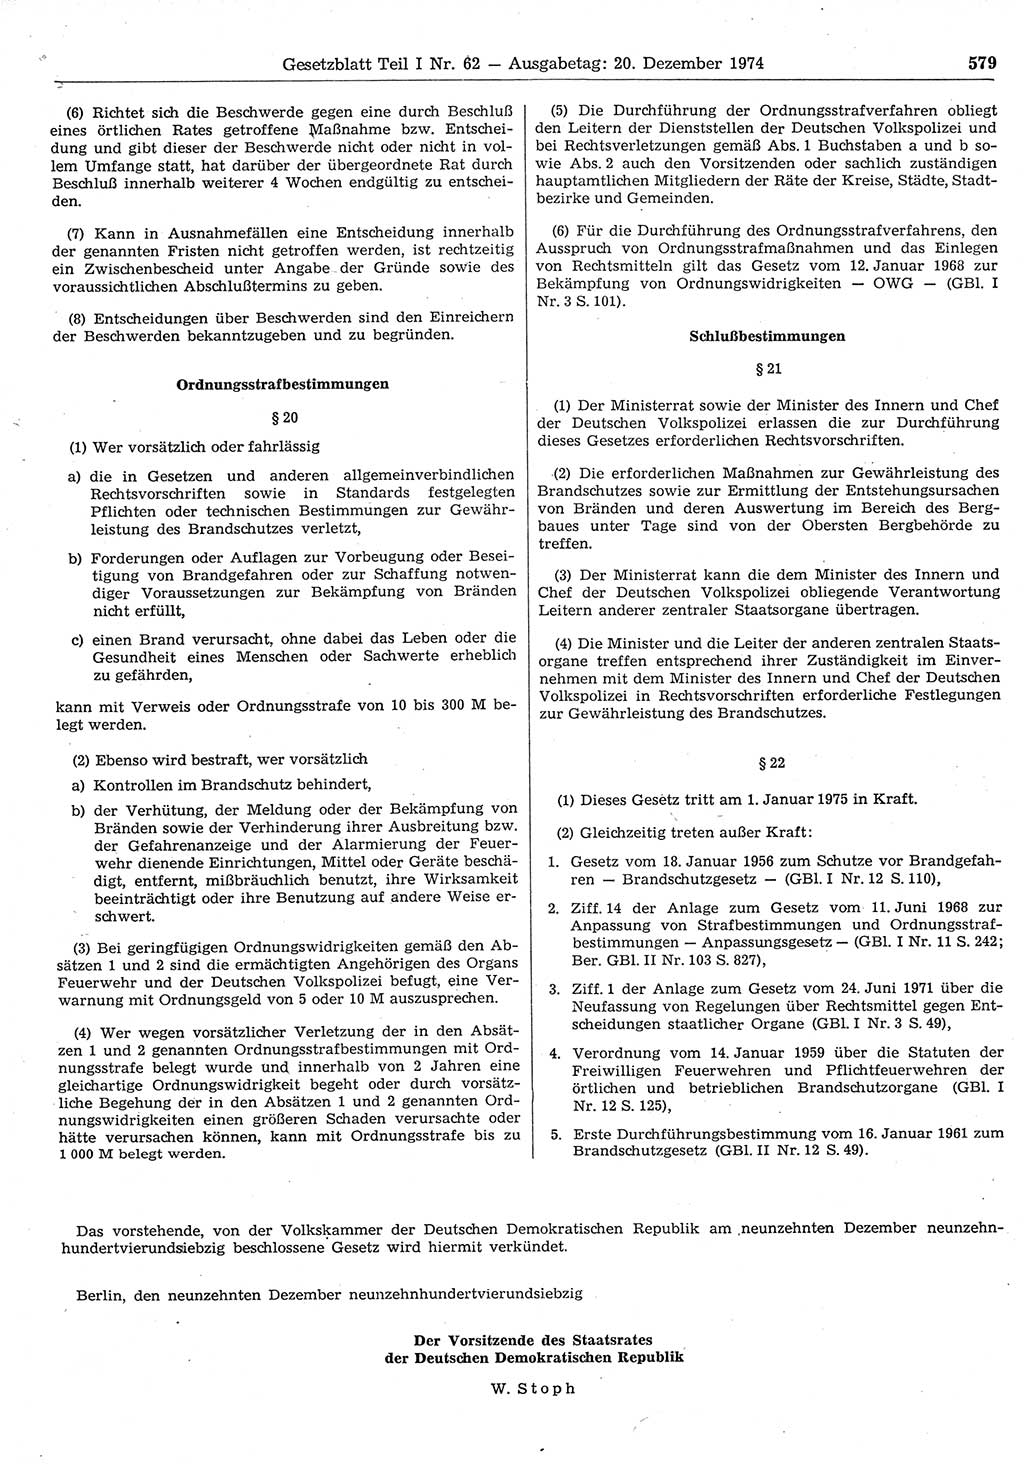 Gesetzblatt (GBl.) der Deutschen Demokratischen Republik (DDR) Teil Ⅰ 1974, Seite 579 (GBl. DDR Ⅰ 1974, S. 579)